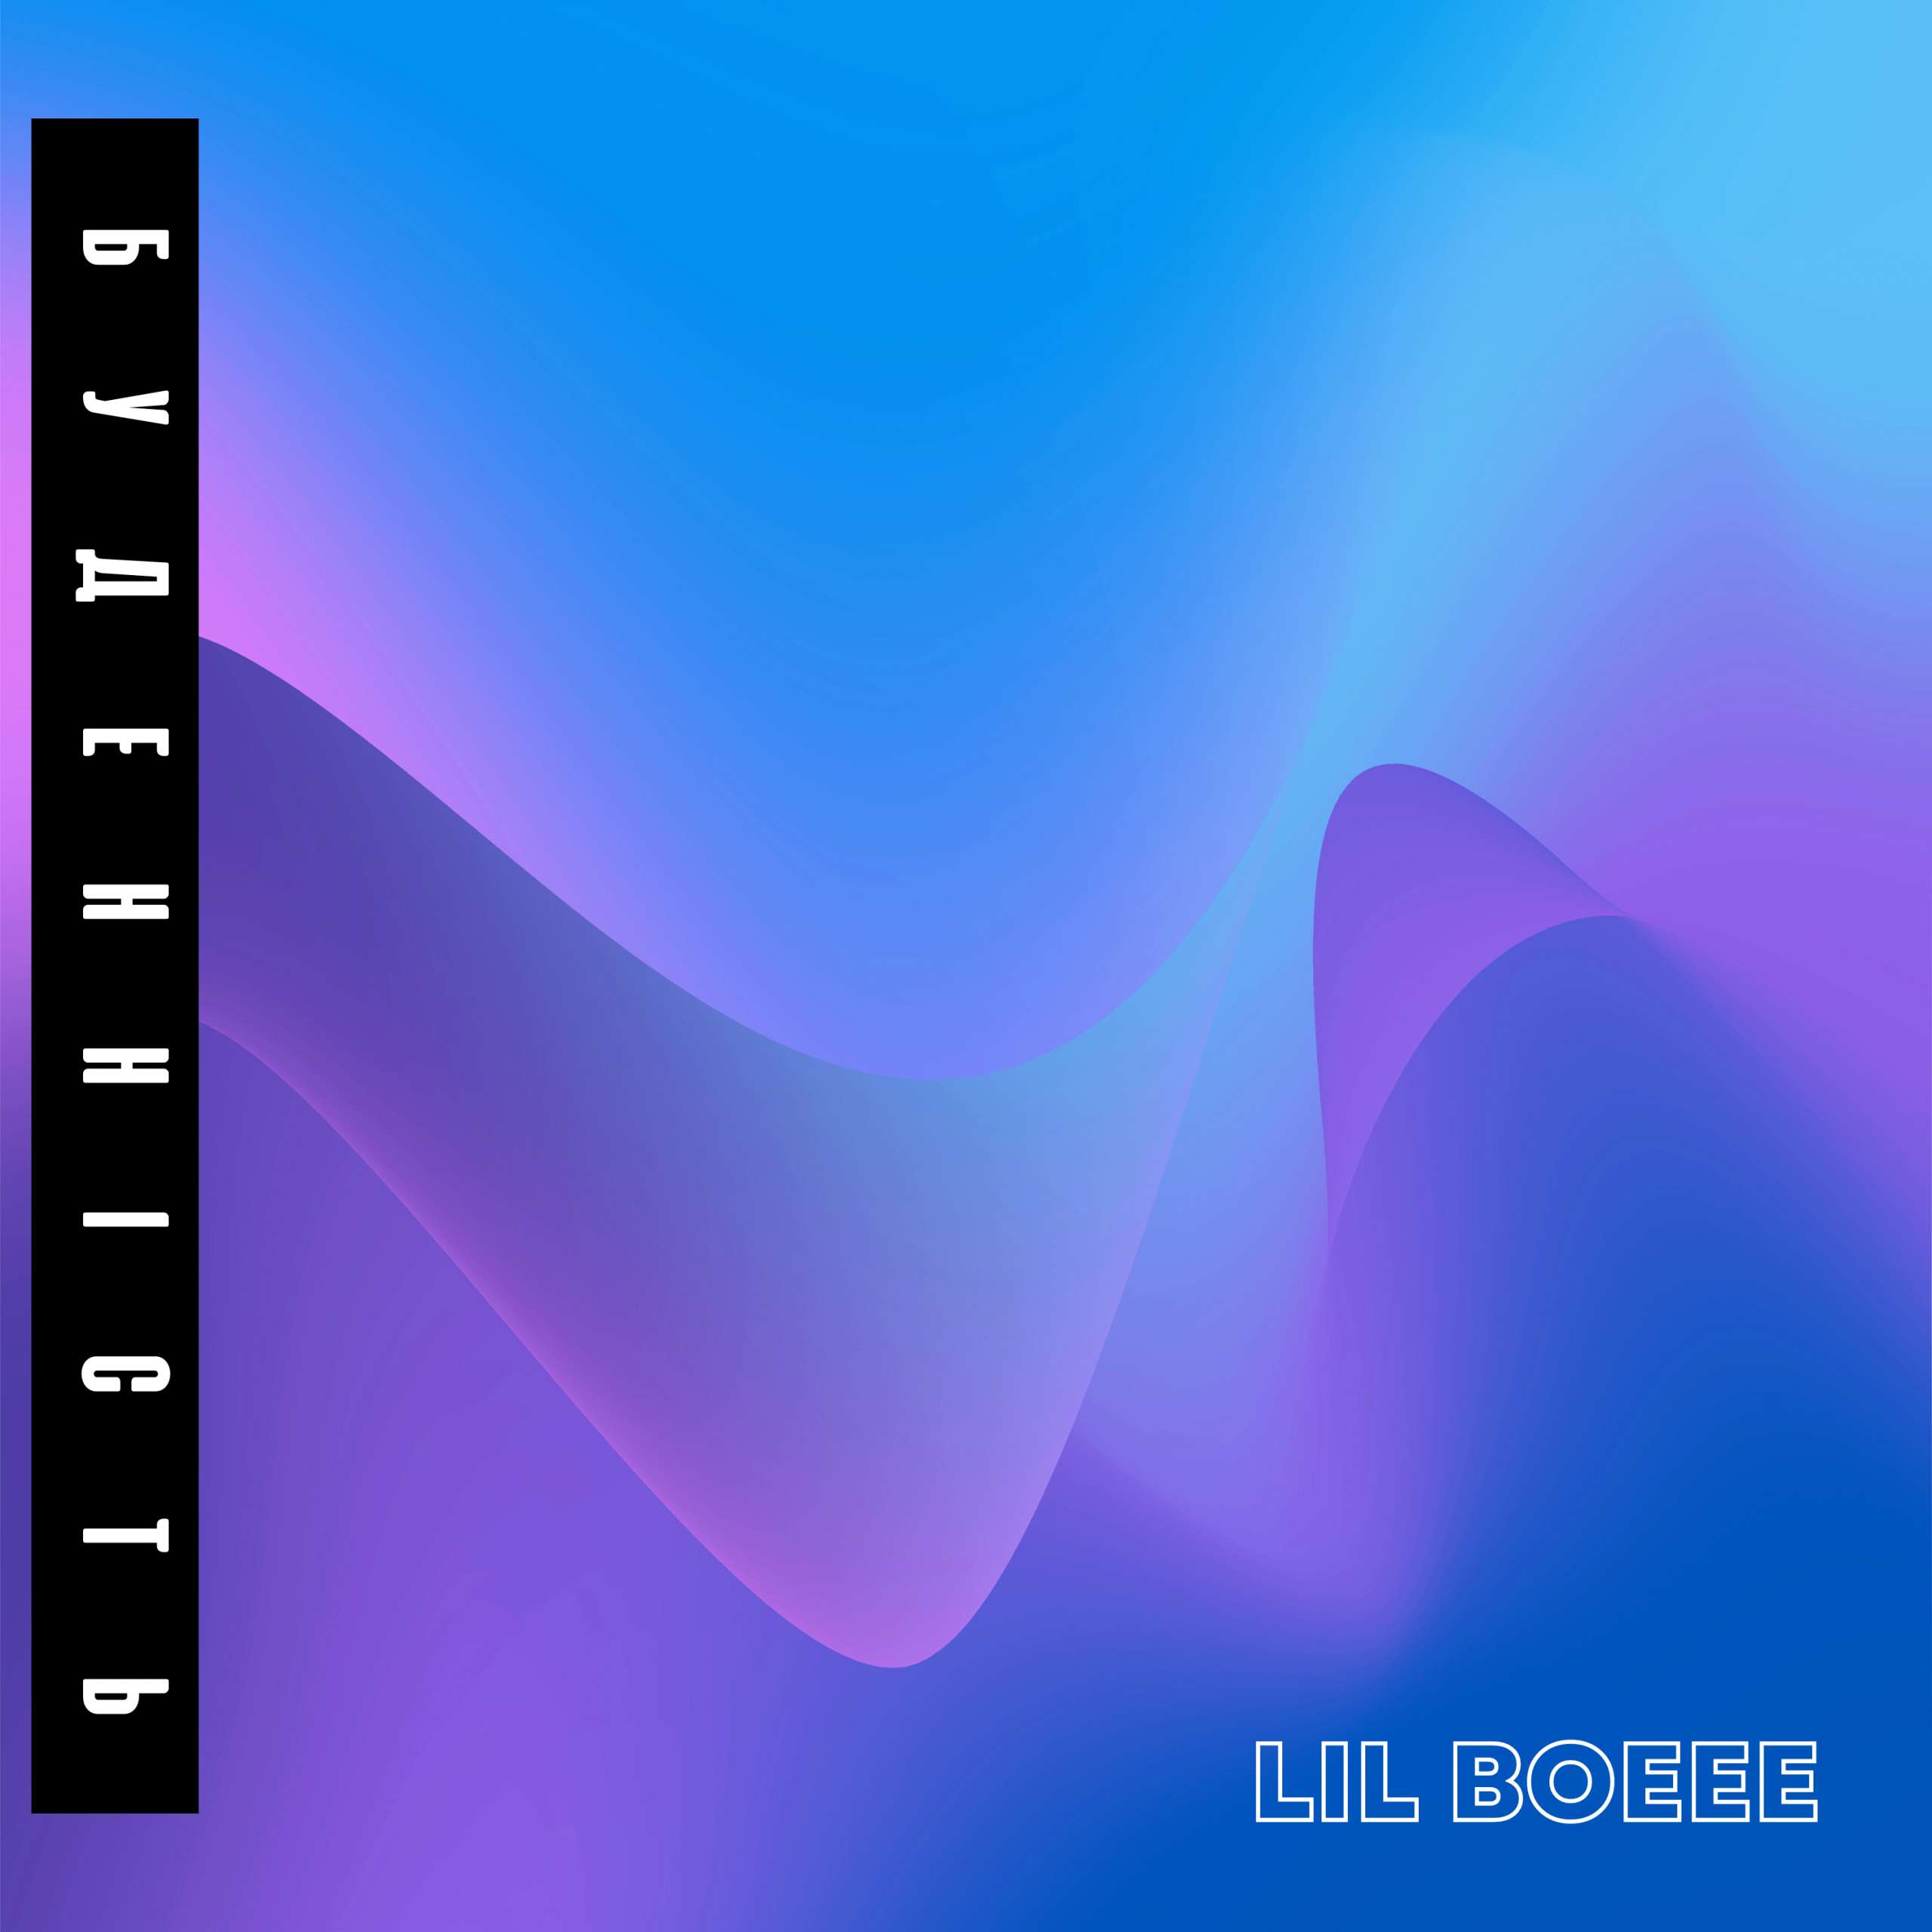 Співак Lil Boeee вже має 3 релізи, кілька виступів на розігріві у львівського гурту Lvivdanceclub на приватних вечірках  і сольні виступи. 